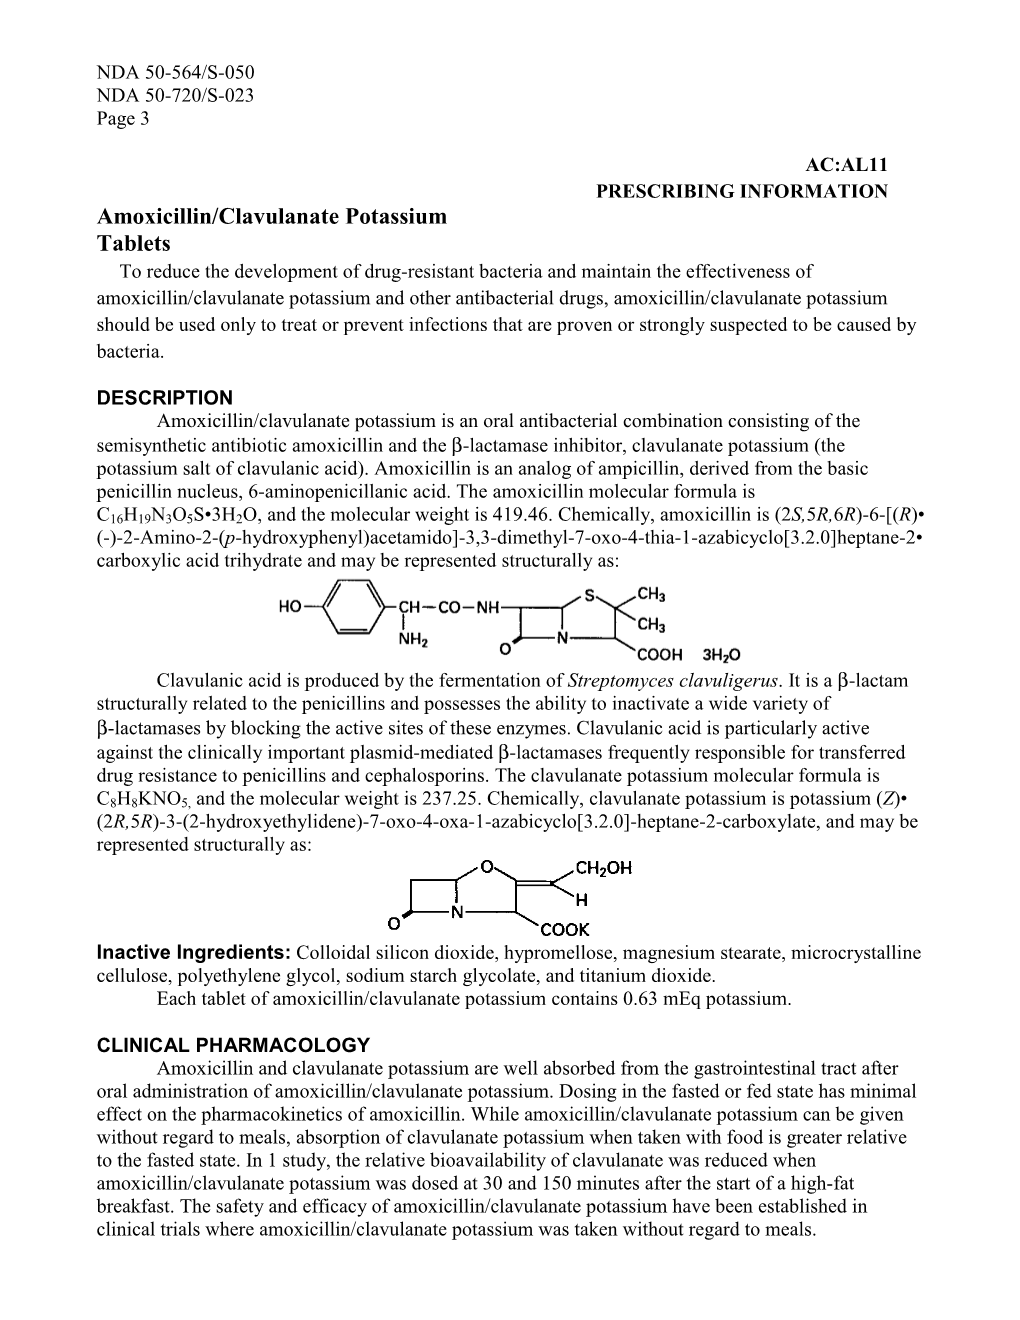 Clavulanate Potassium Label